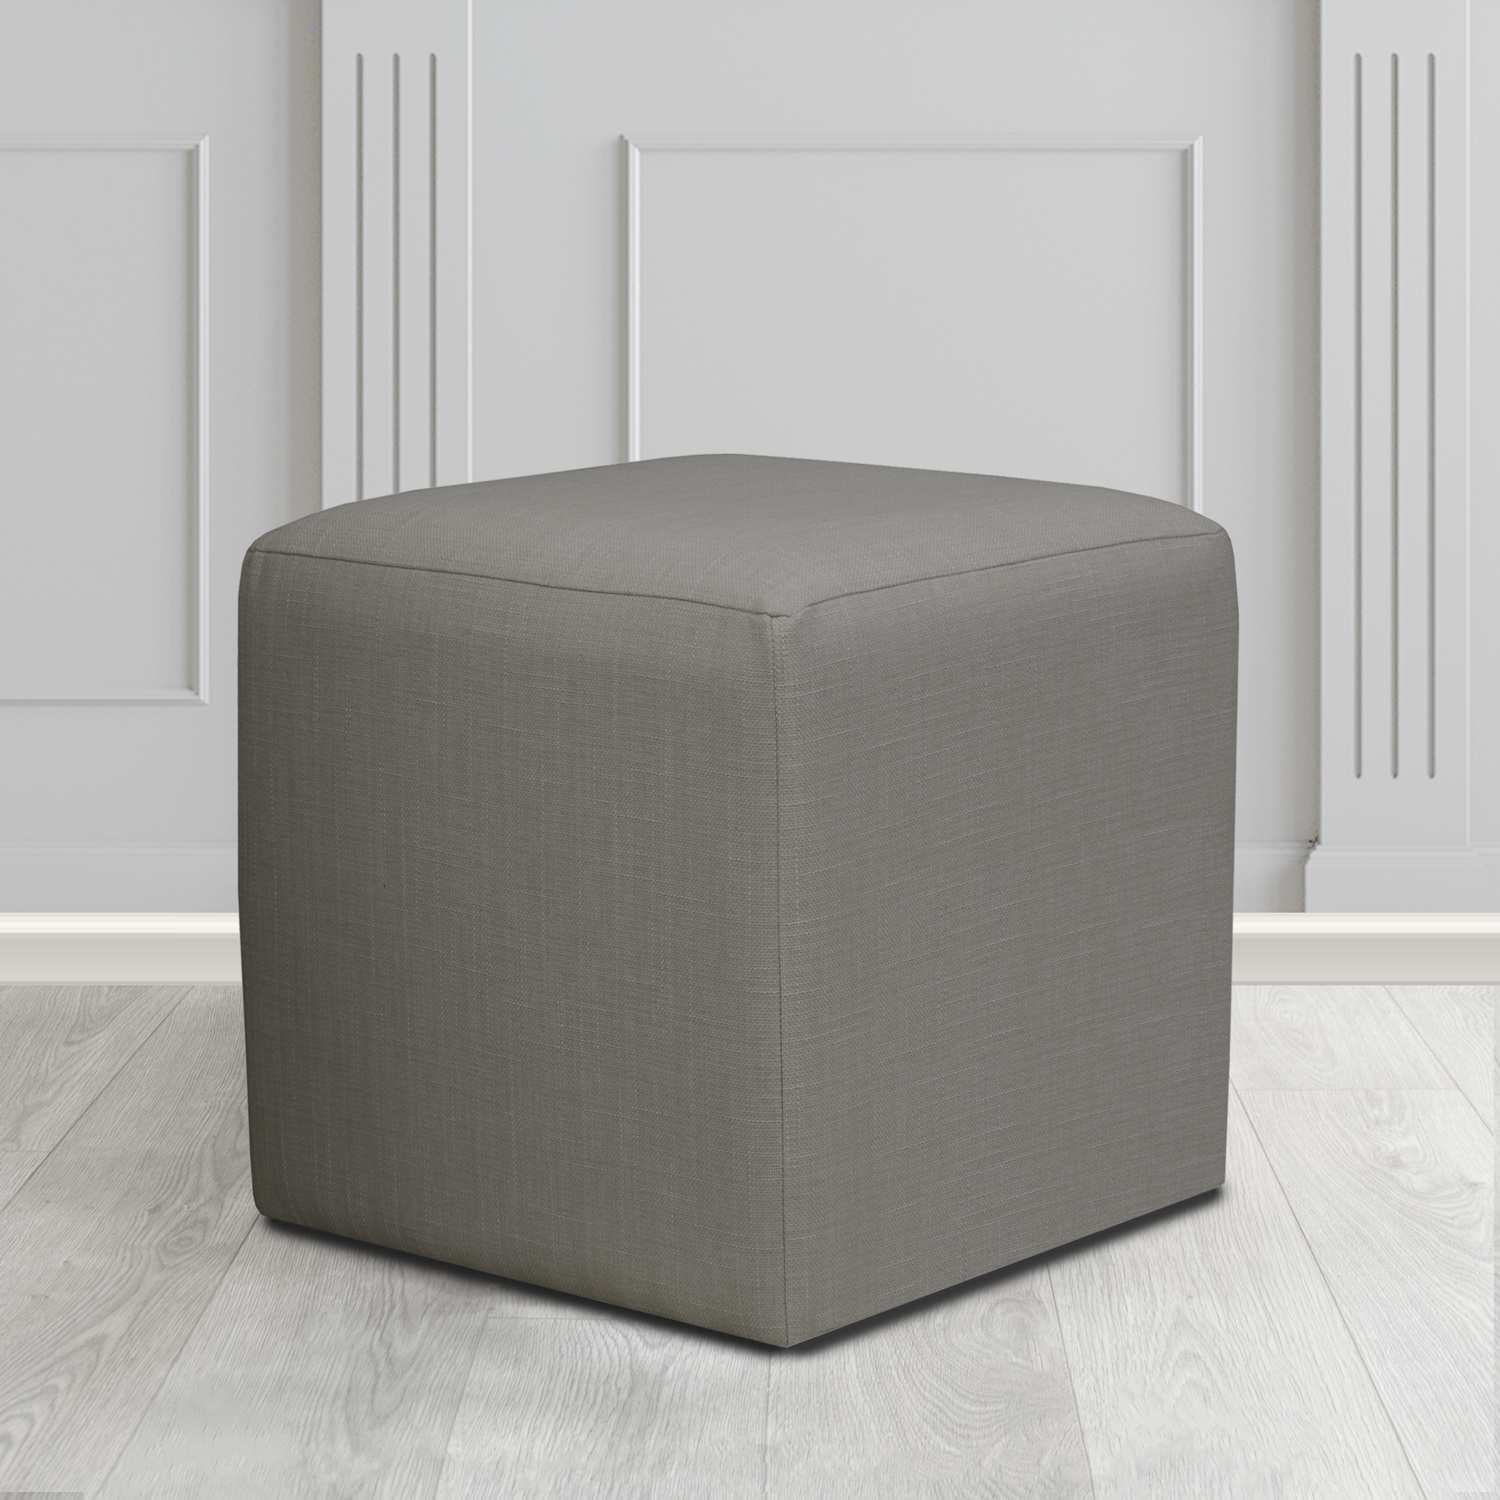 Paris Emporio Smokey Grey Crib 5 Fabric Cube Footstool - The Tub Chair Shop